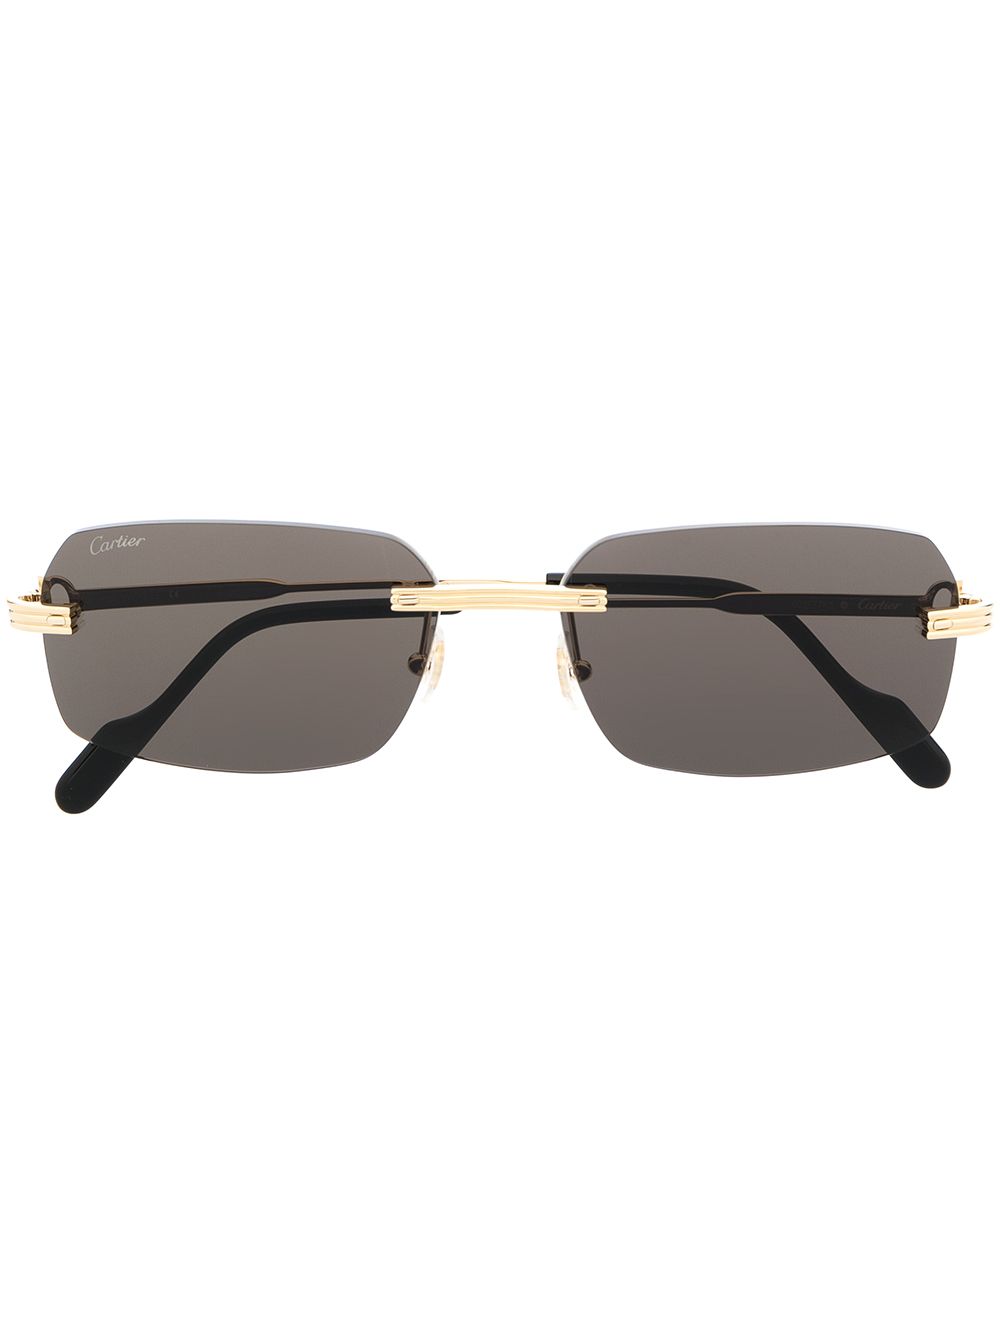 Cartier Eyewear Sonnenbrille mit eckigem Gestell - Gold von Cartier Eyewear